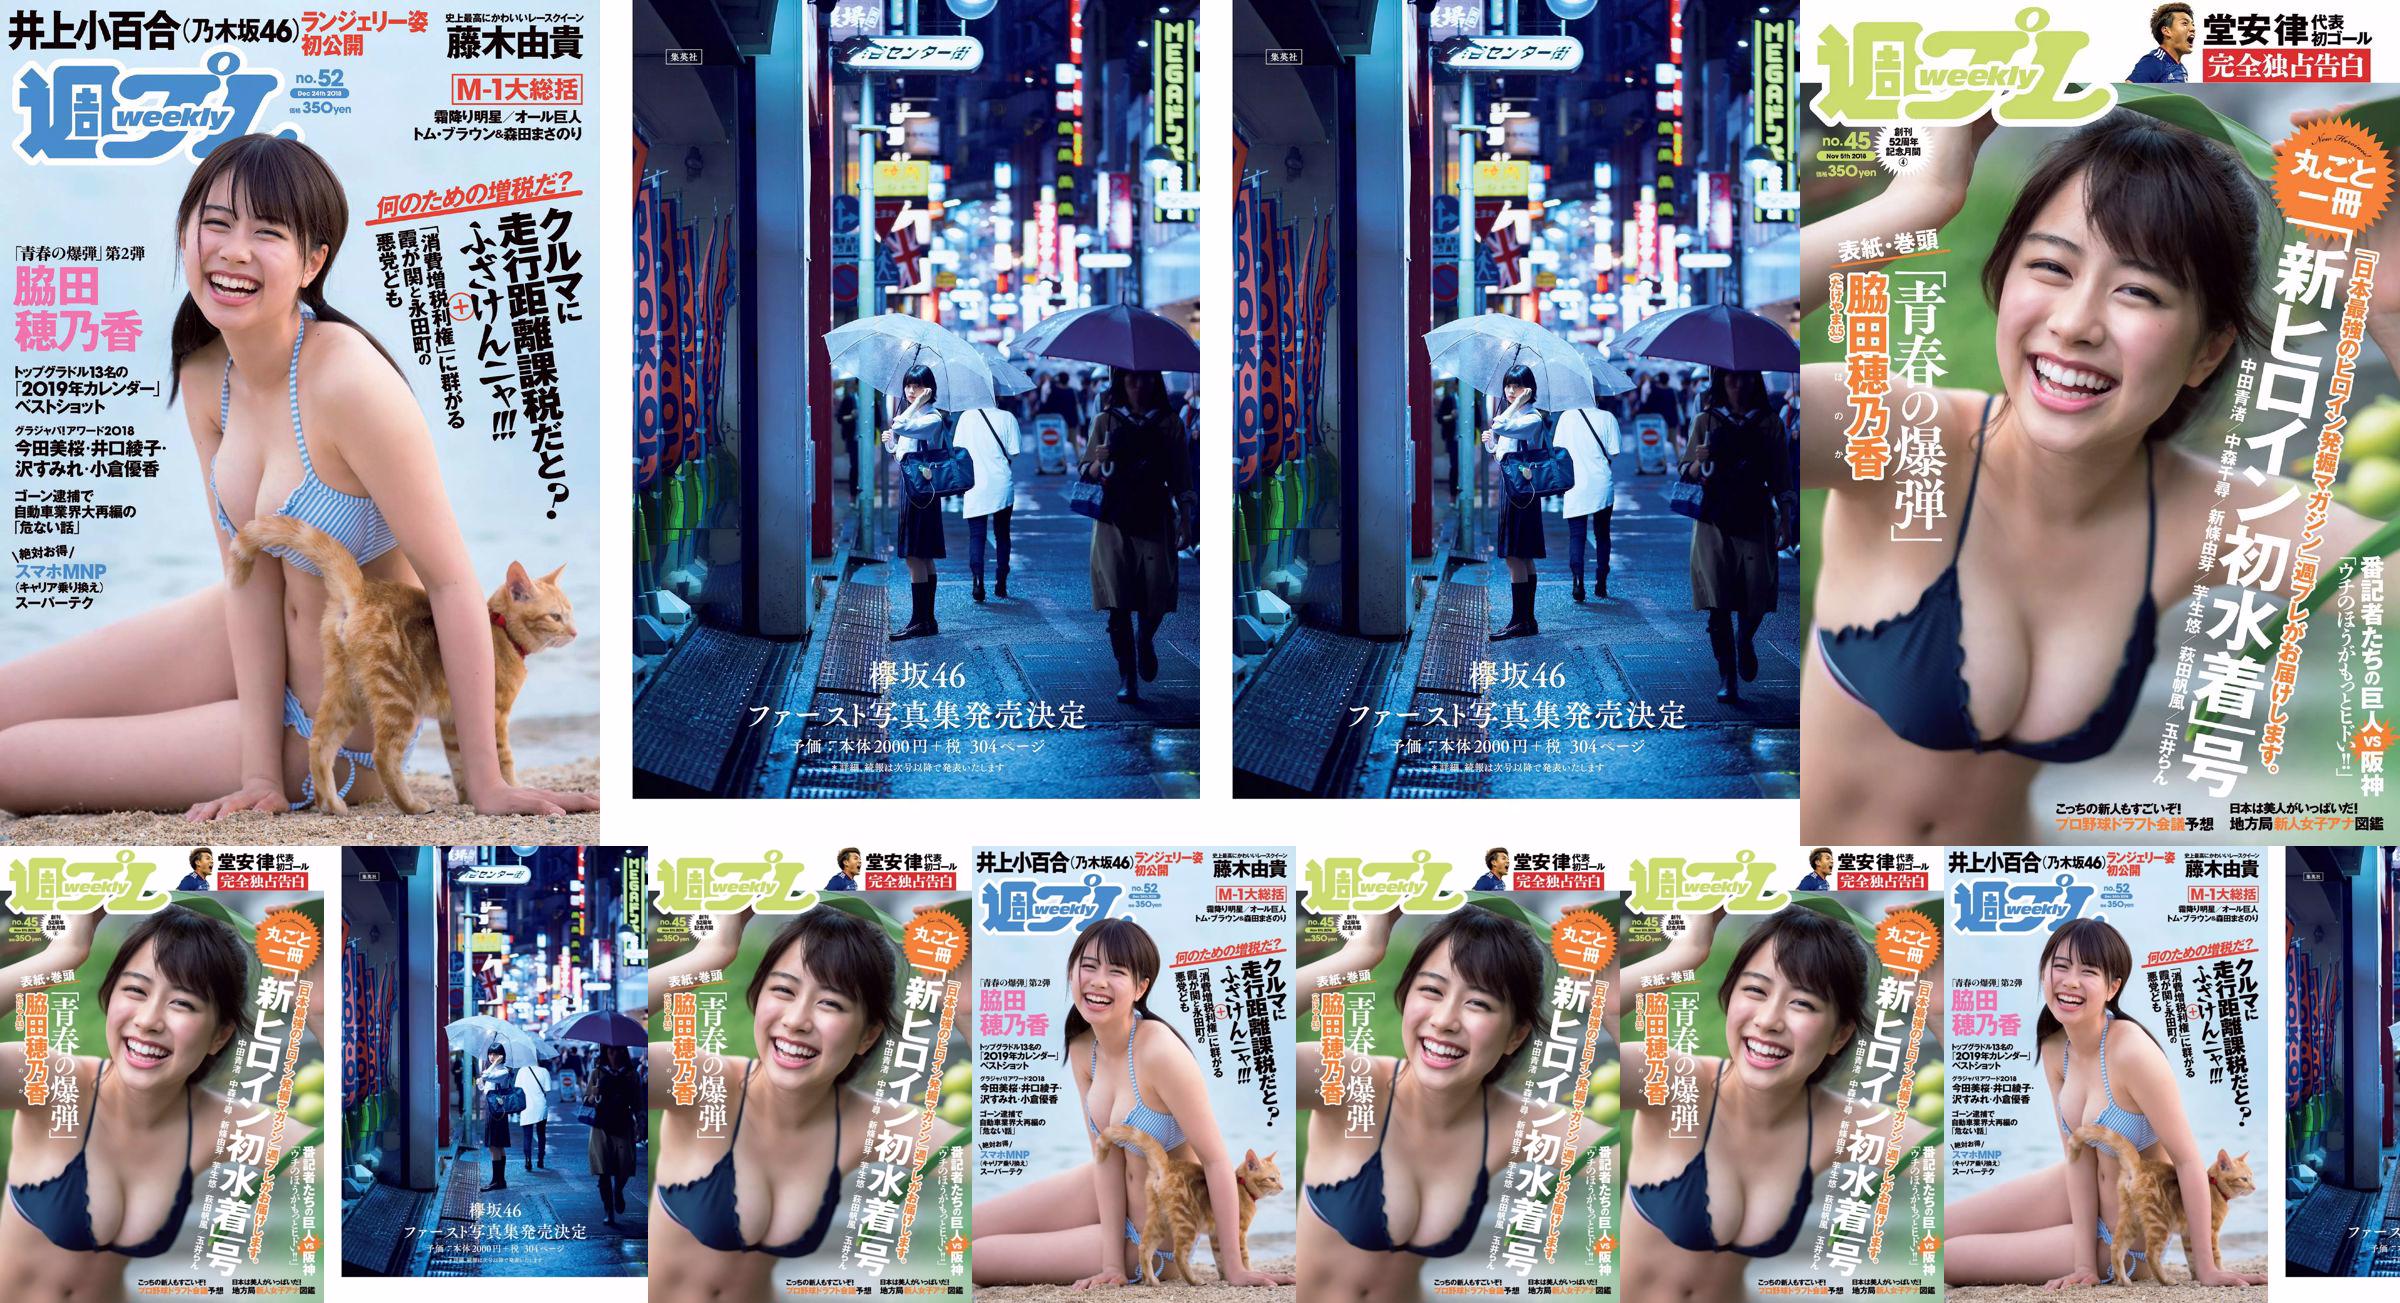 Honoka Hagita Seina Nakata Chihiro Nakamori Yume Shinjo Yuu Imou Honoka Hagita Ran Tamai [Playboy Semanal] 2018 Foto No.45 No.09b912 Página 4